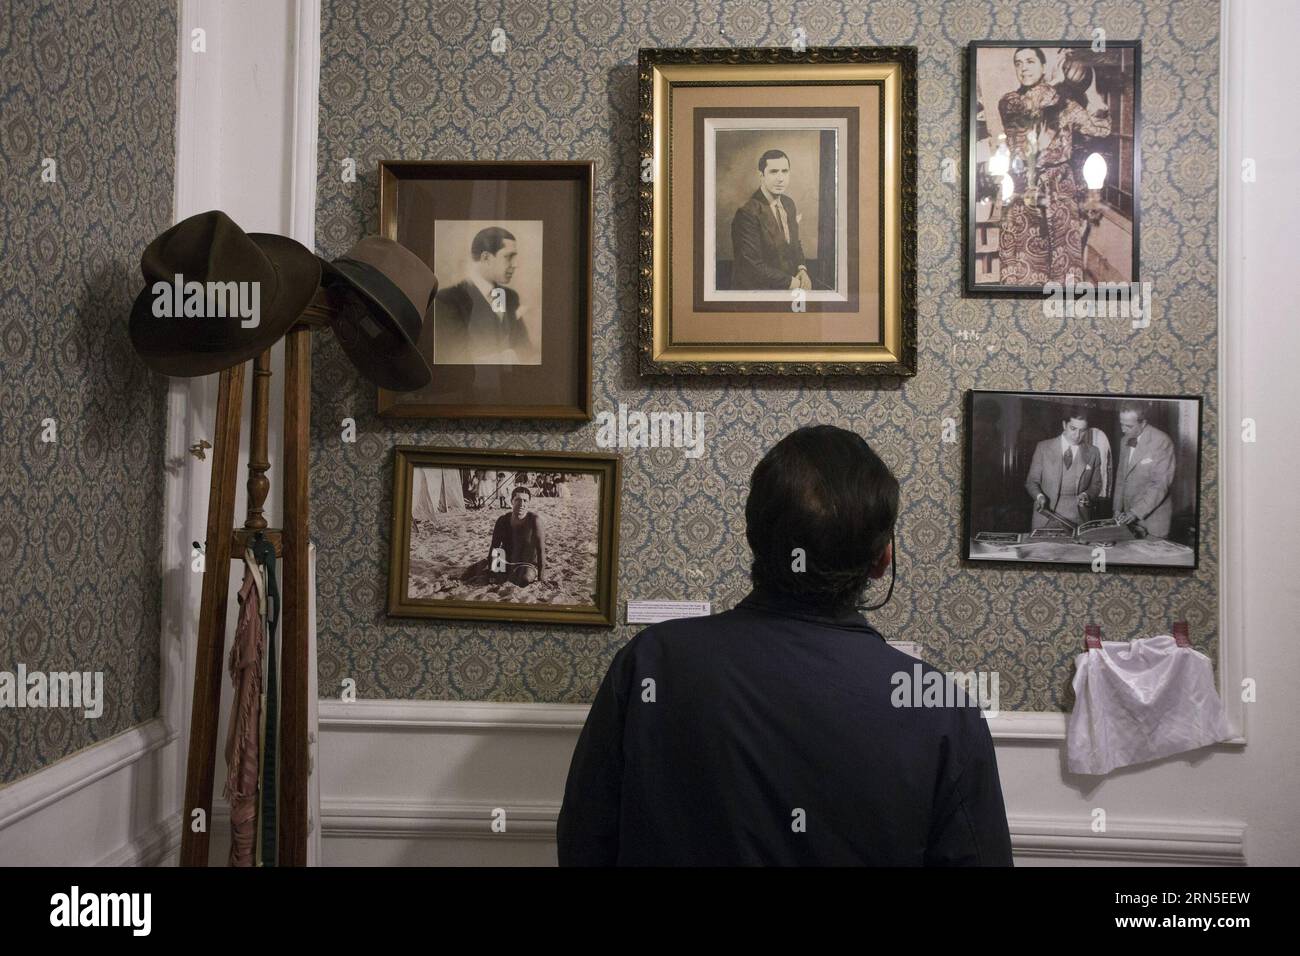 Das am 24. Juni 2013 aufgenommene Dateifoto zeigt einen Besucher, der Fotos im Casa Gardel House Museum in Buenos Aires, Argentinien, sieht. Die Menschen gedenken am Mittwoch an den 80. Todestag von Carlos Gardel. Carlos Gardel war Sänger, Songwriter, Komponist und Schauspieler und die prominenteste Tangofigur in der ersten Hälfte des 20. Jahrhunderts. Für viele verkörpert Gardel die Seele des Tango-Stils. Gardel starb bei einem Flugzeugabsturz auf dem Höhepunkt seines carrer und wurde ein archetypischer tragischer Held, der in ganz Lateinamerika aufgestellt wurde. )(ZHF) ARGENTINIEN-BUENOS AIRES-MUSIC-GARDEL-JUBILÄUM MARTINXZABALA PUBLICAT Stockfoto